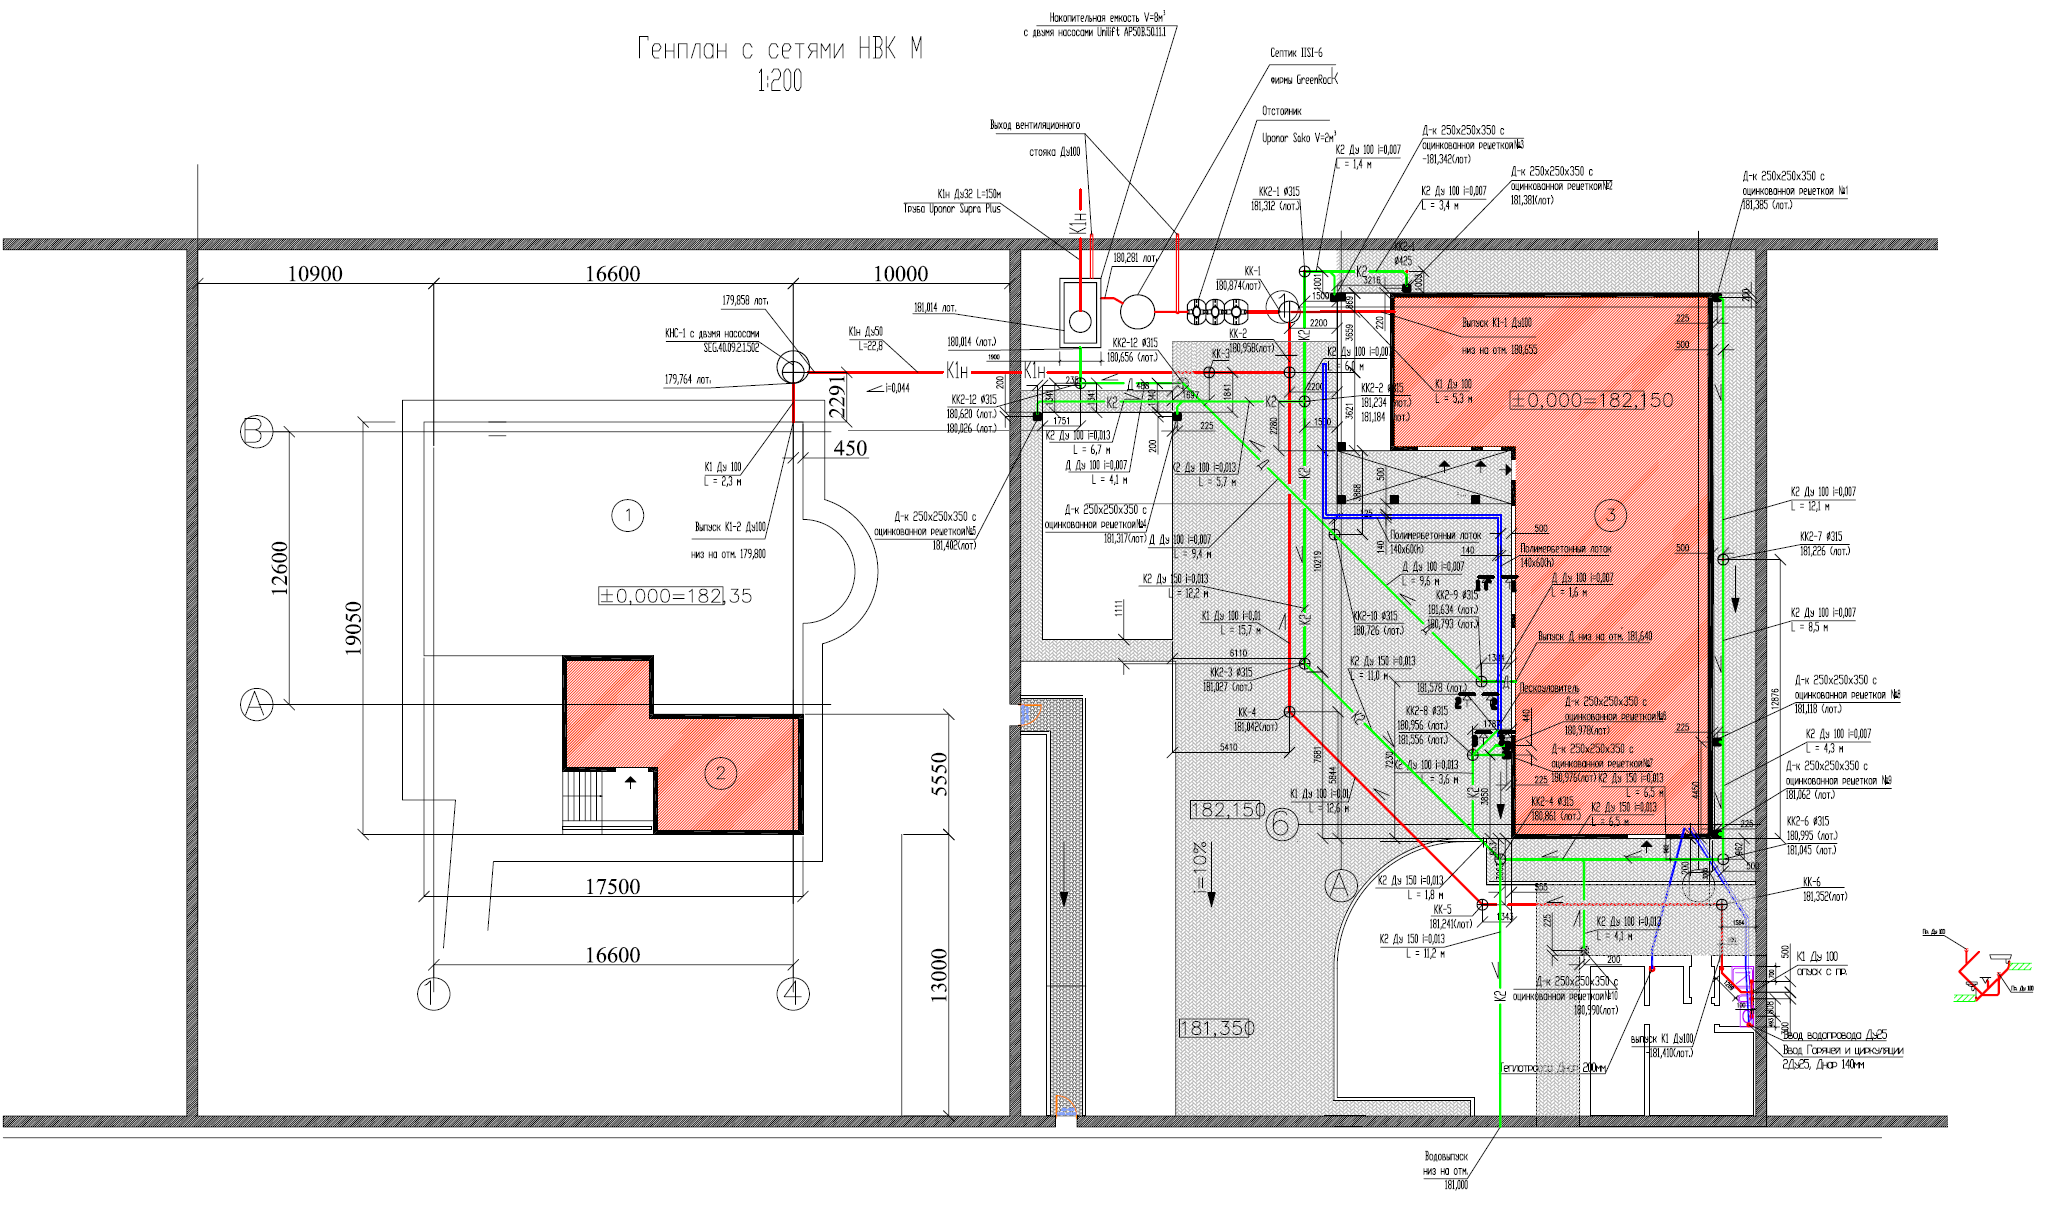 Схема инженерных коммуникаций здания